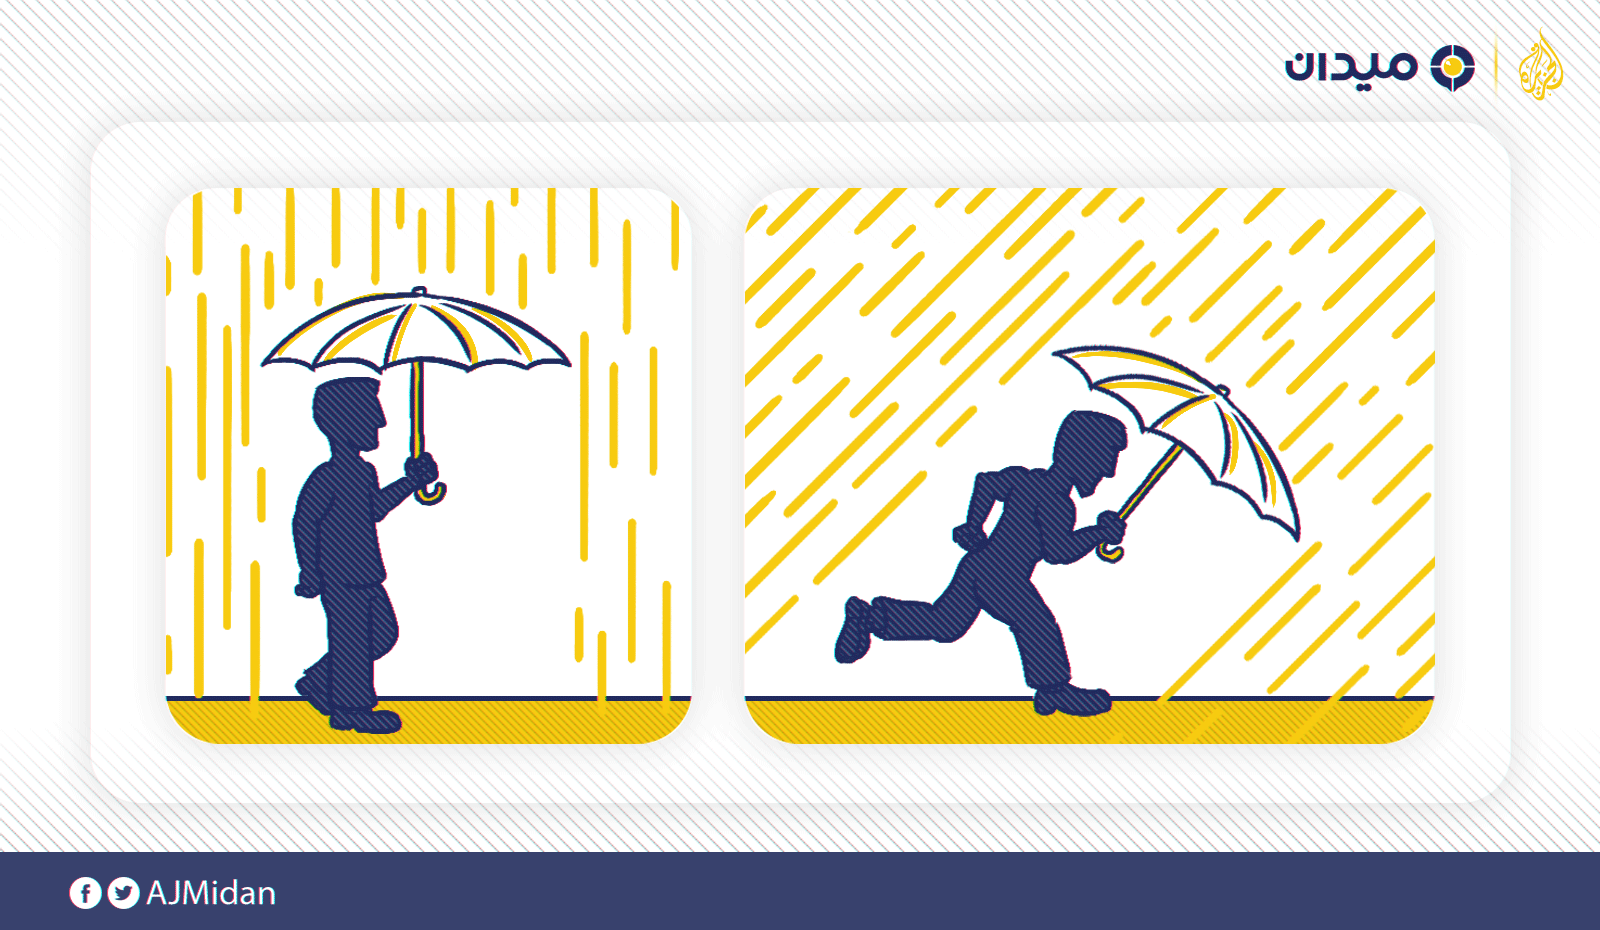 يشبه الأمر أن تقف تحت المطر، سوف توجه المظلة للأعلى تماما، أما إذا كنت تجري فسوف يبدو المطر مائلا وسوف توجه المظلة للأمام حسب سرعتك، هنا يمكن حساب ميل المظلة وقياس سرعة المطر بالنسبة لسرعتك (الجزيرة)